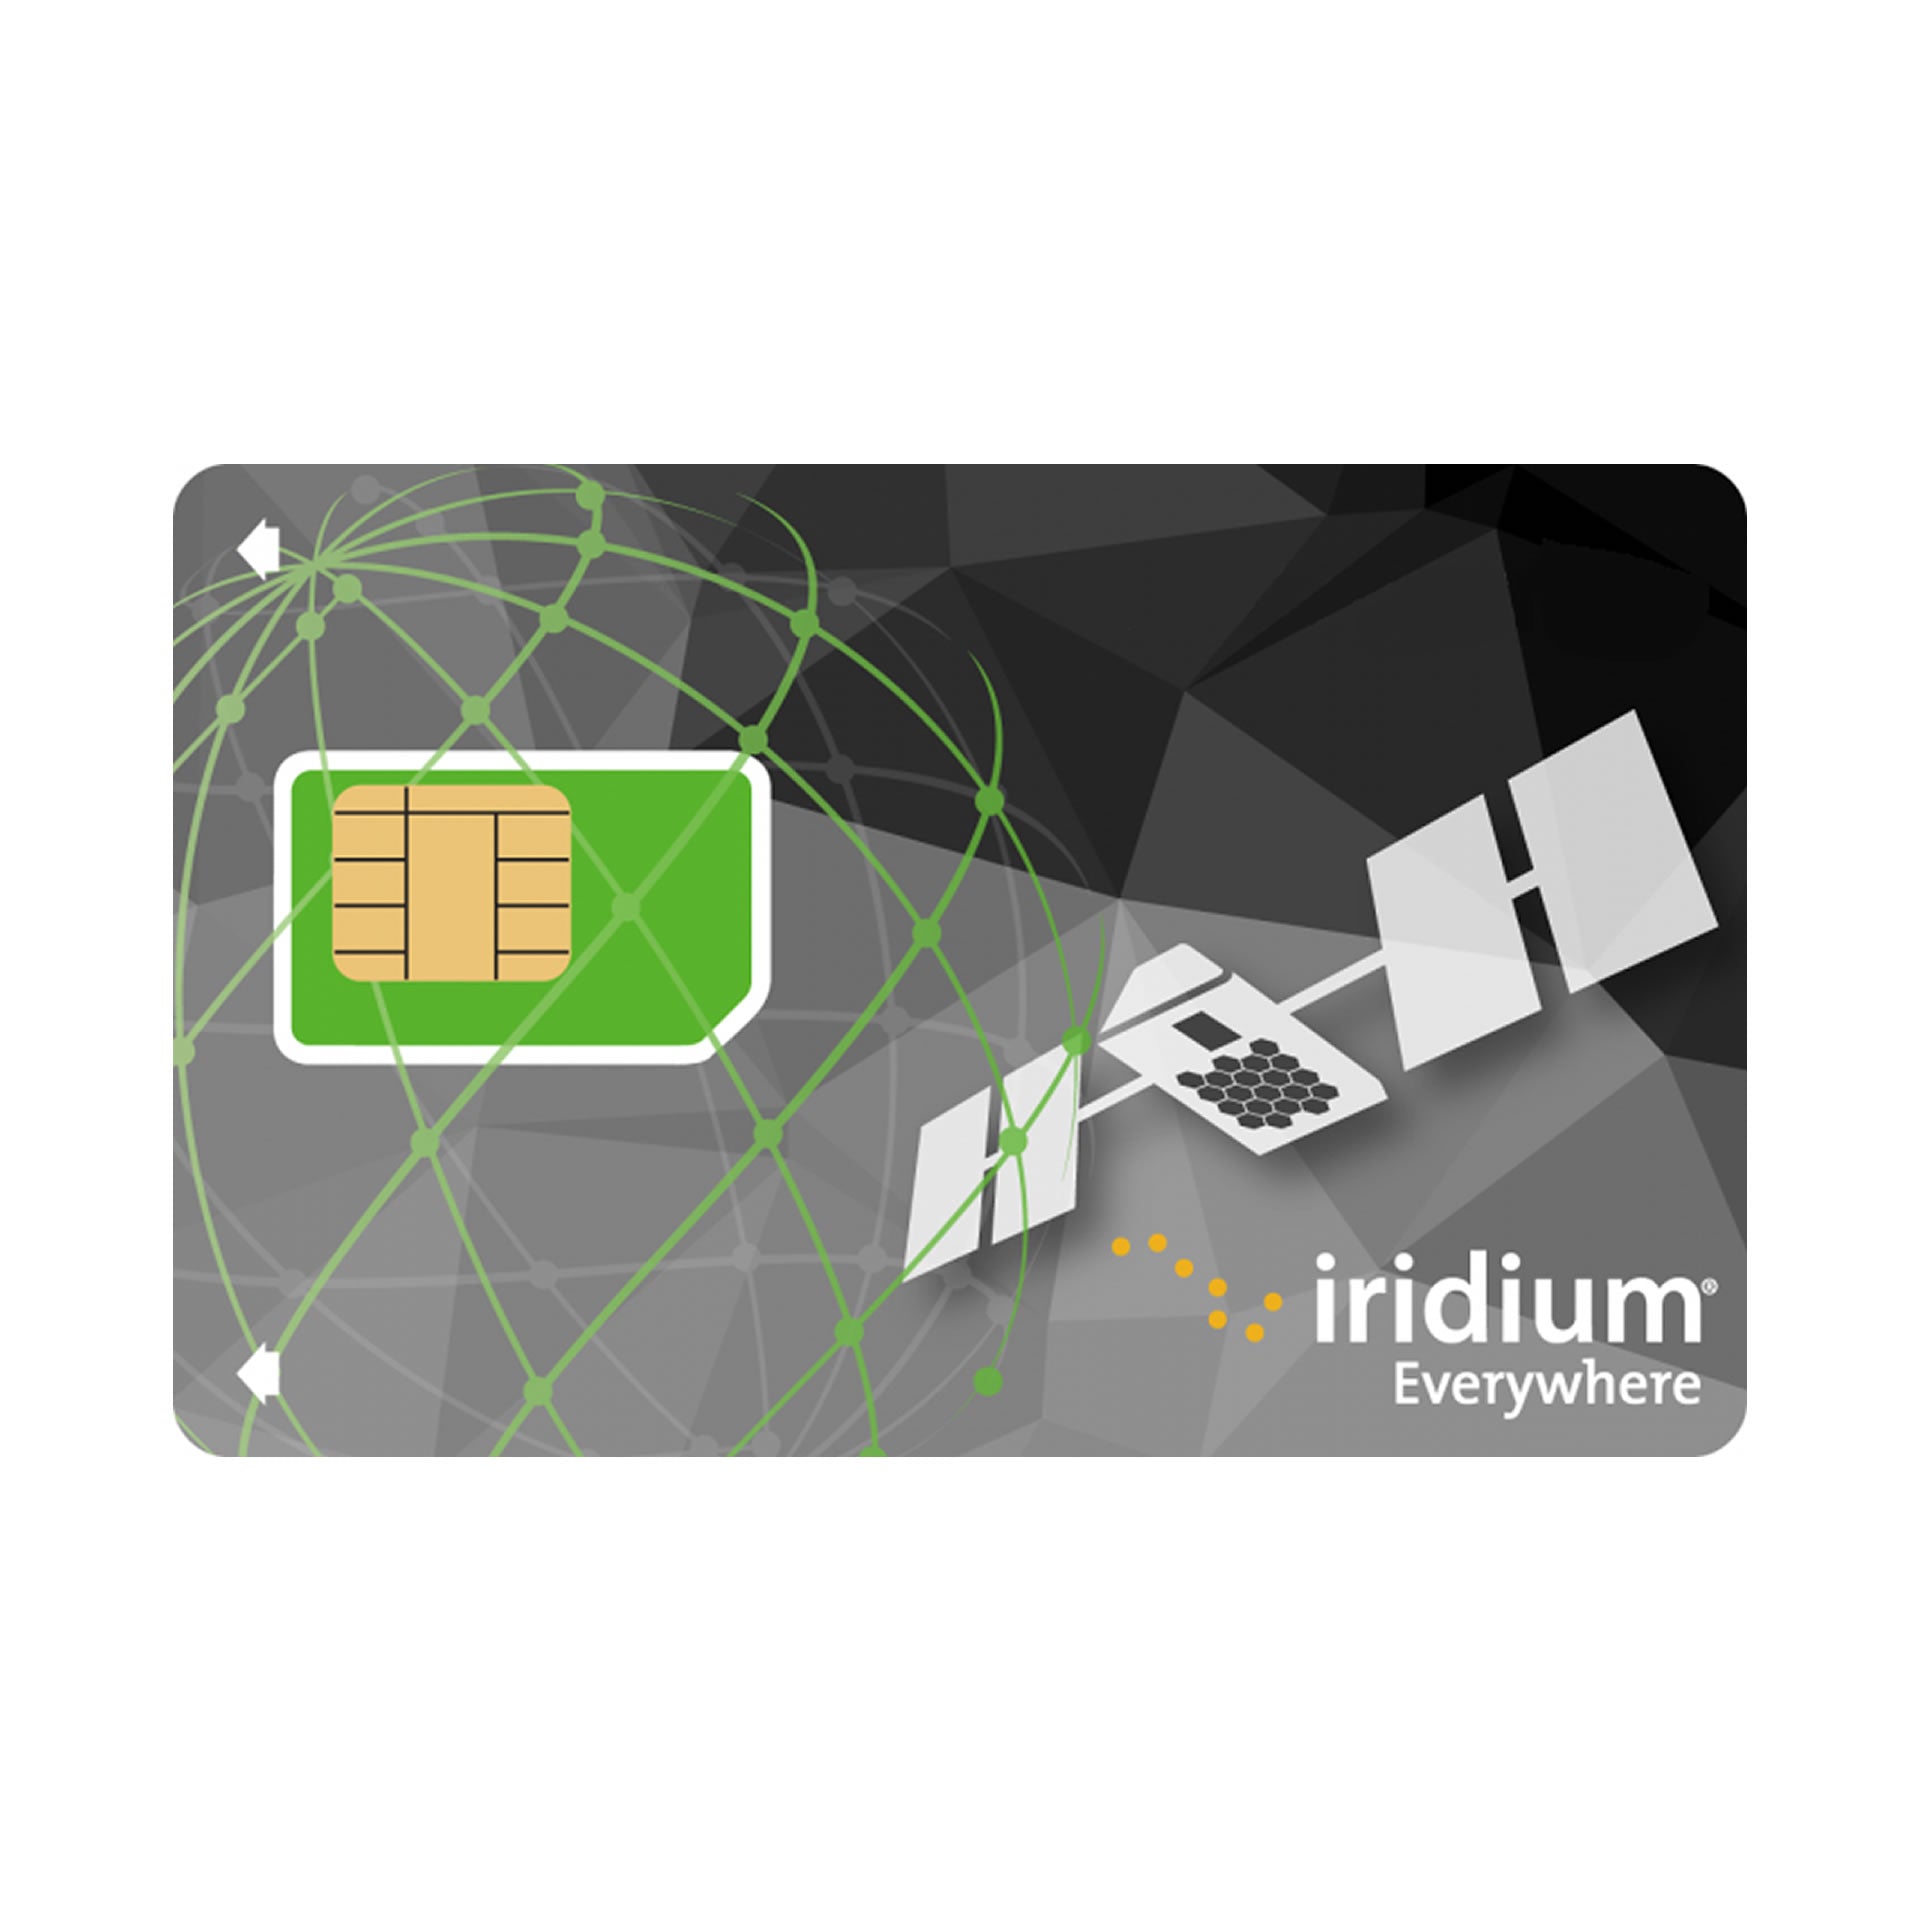 IRIDIUM GO Scheda SIM prepagata - 1000 min DATI - 12 MESI